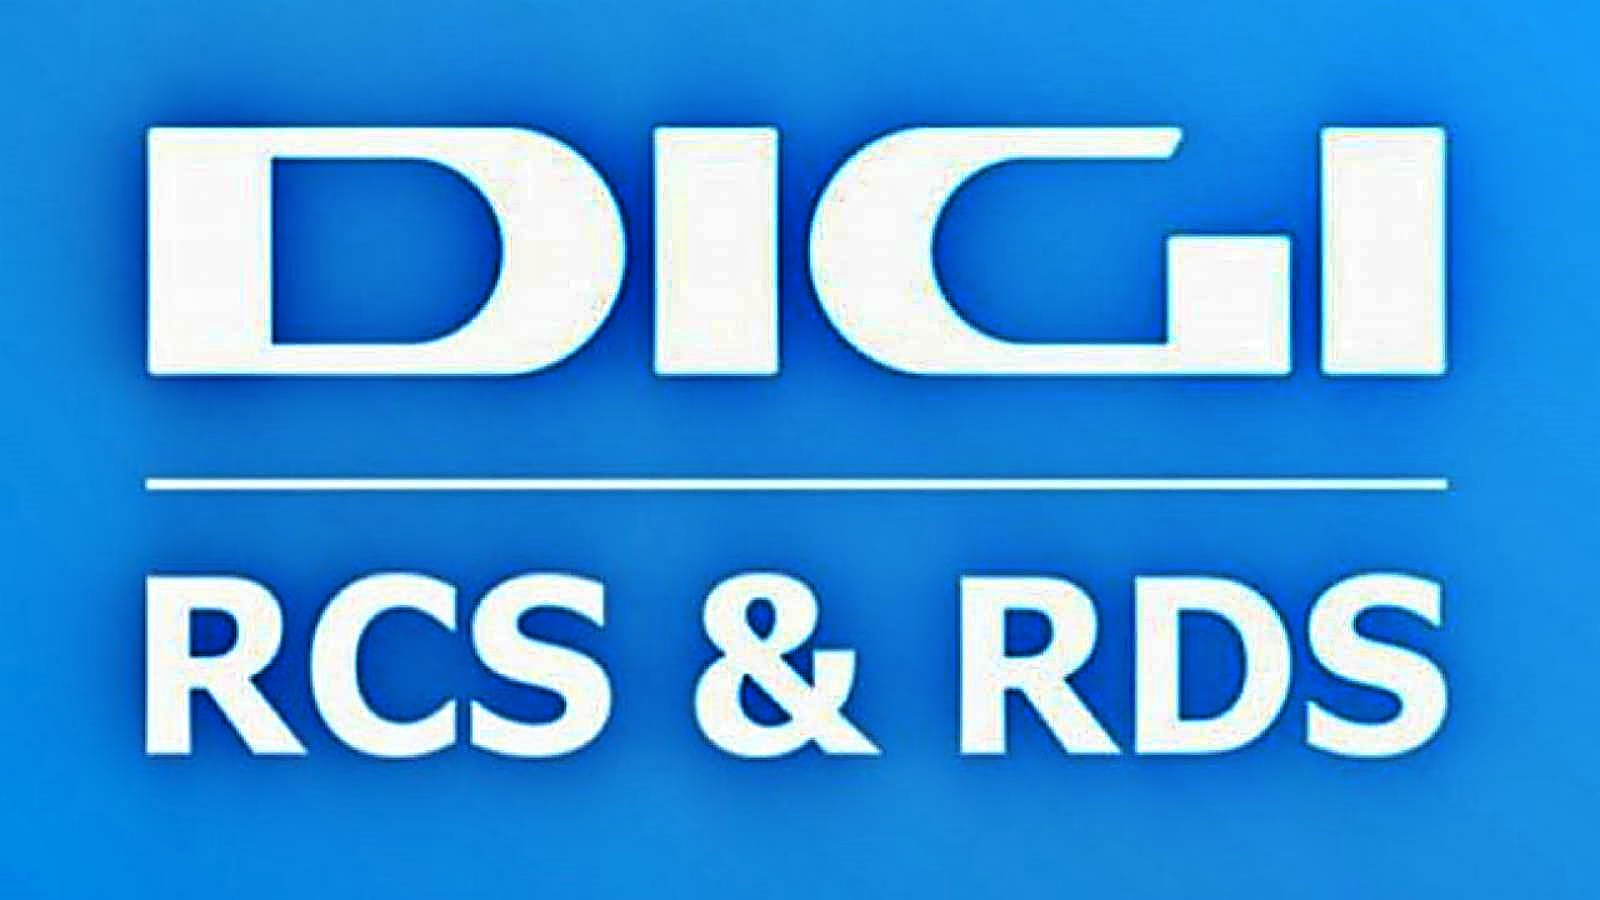 RCS & RDS OFFICIËLE informatie gericht op Roemeense klanten